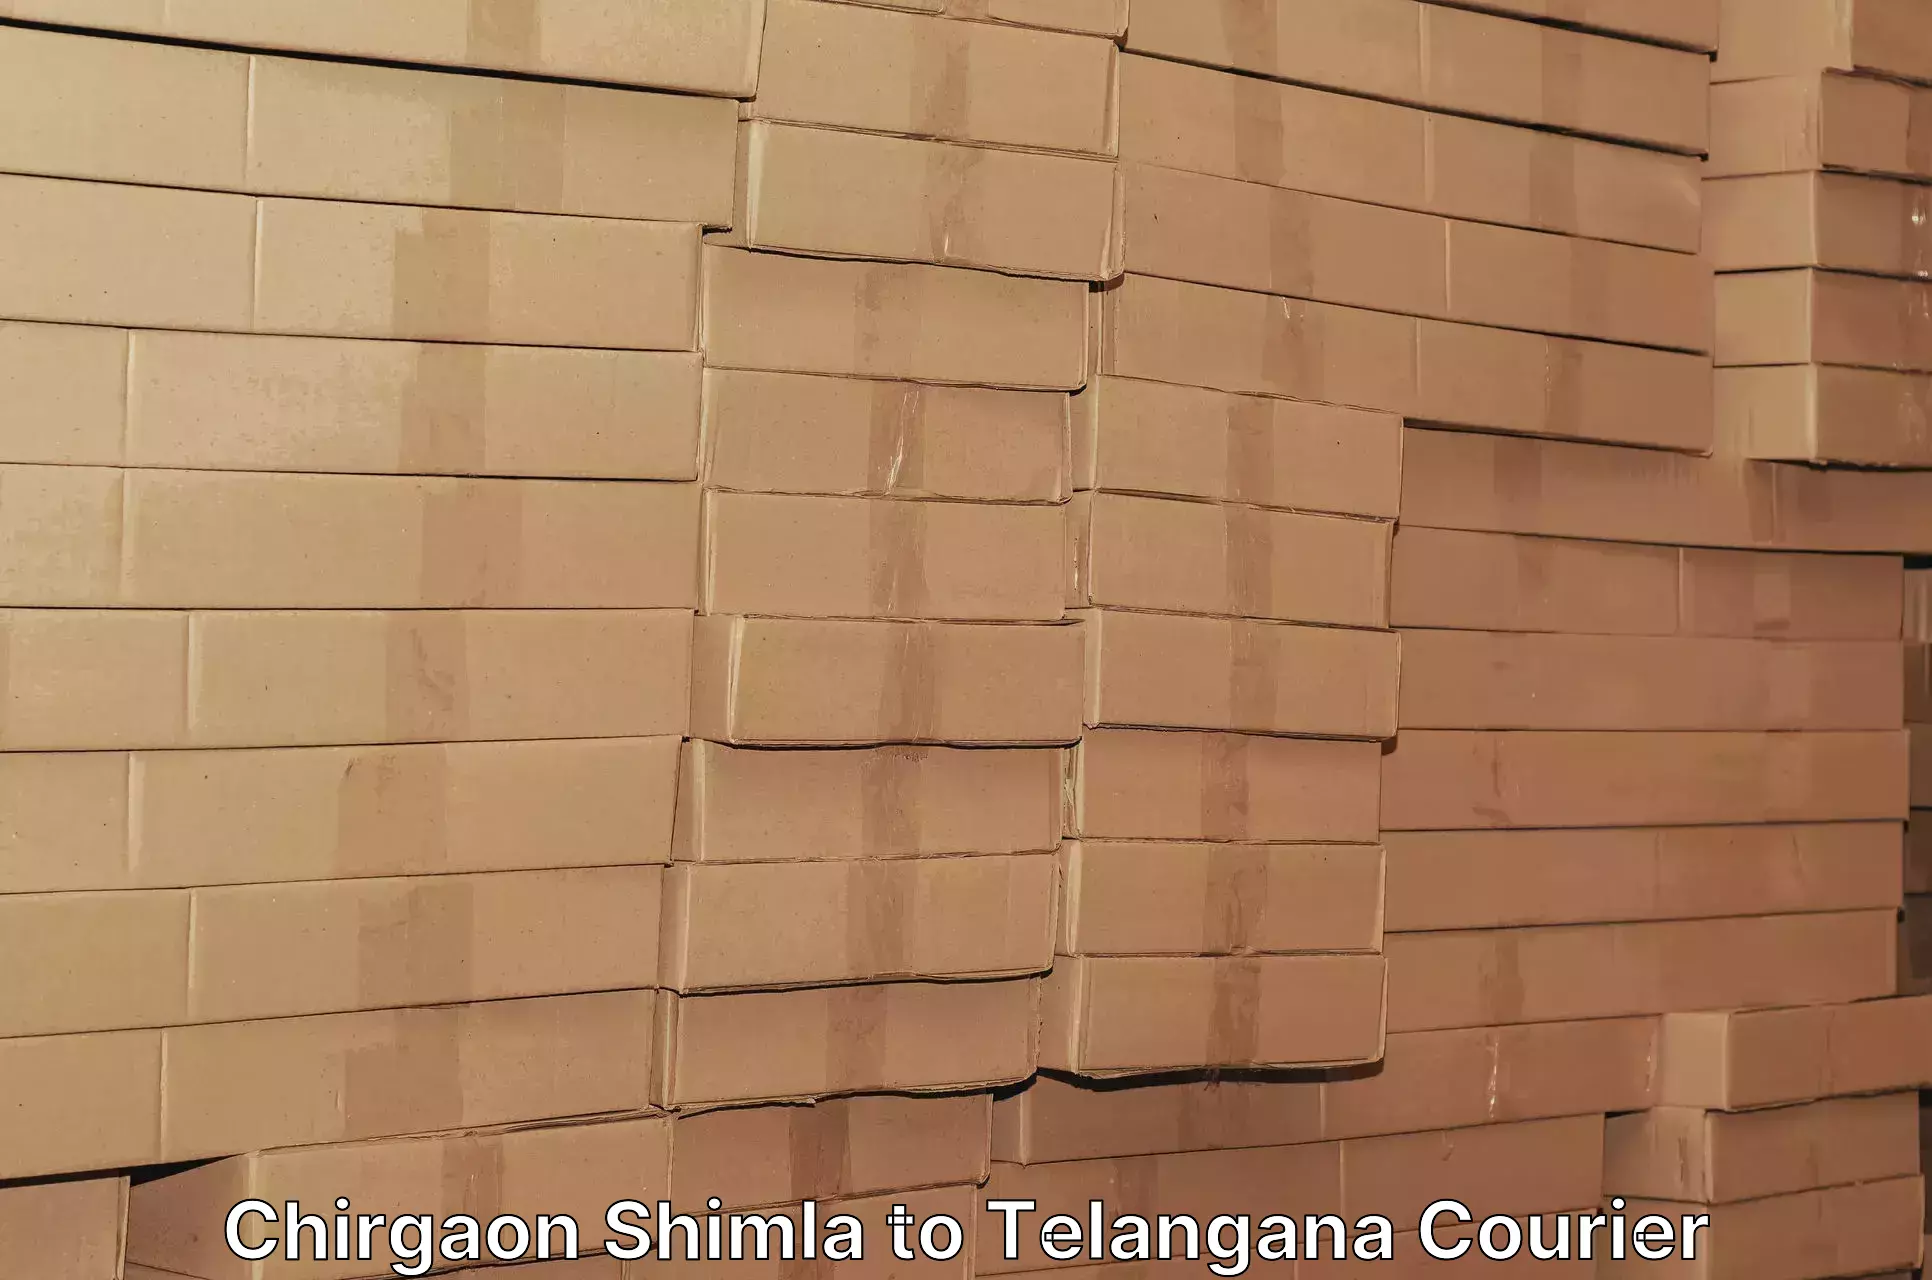 High-capacity shipping options Chirgaon Shimla to Telangana